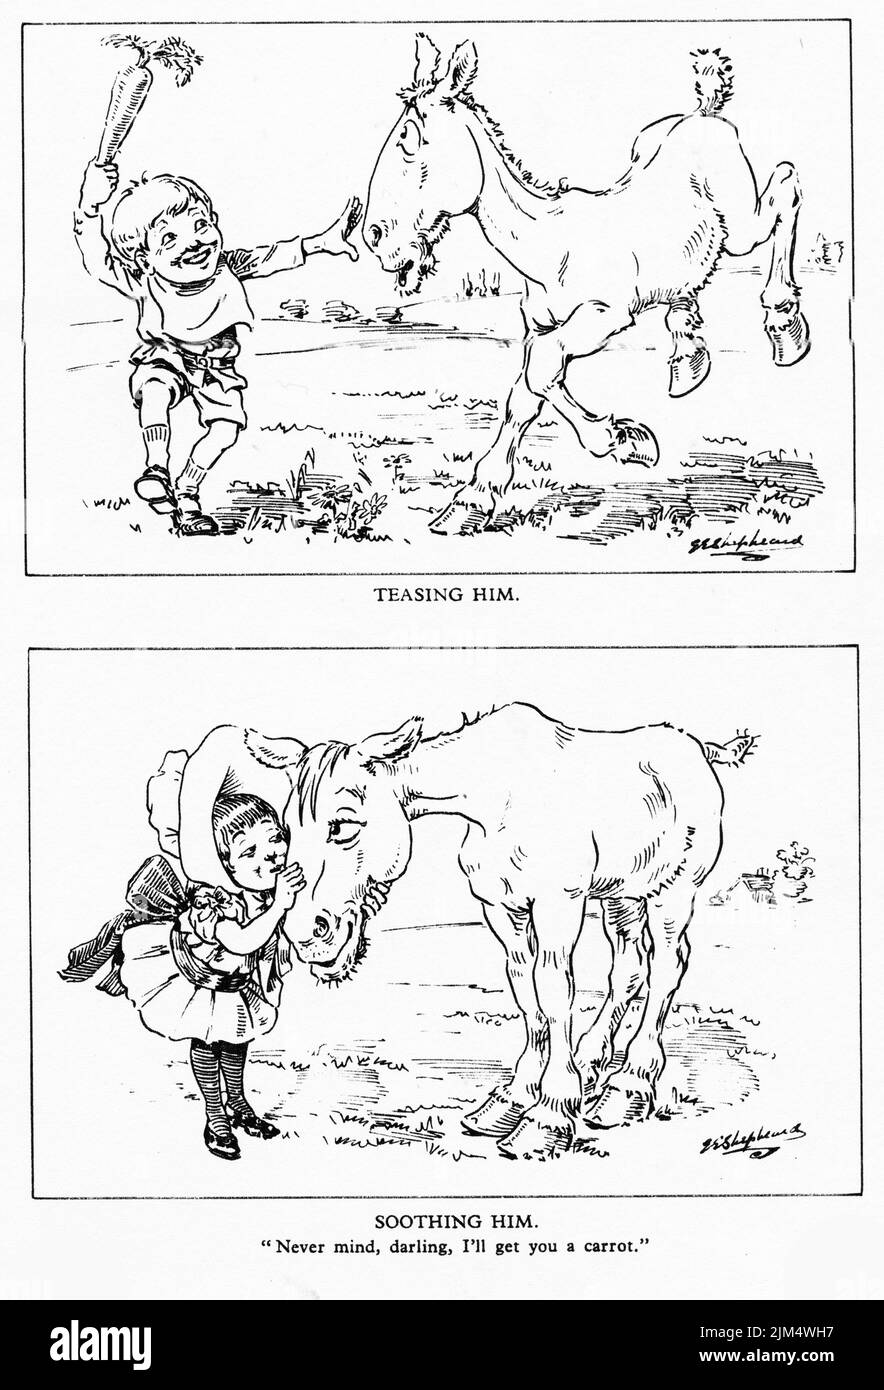 Illustration de style caricature de deux enfants traitant un cheval de manière peu cruelle et puis gentiment Banque D'Images